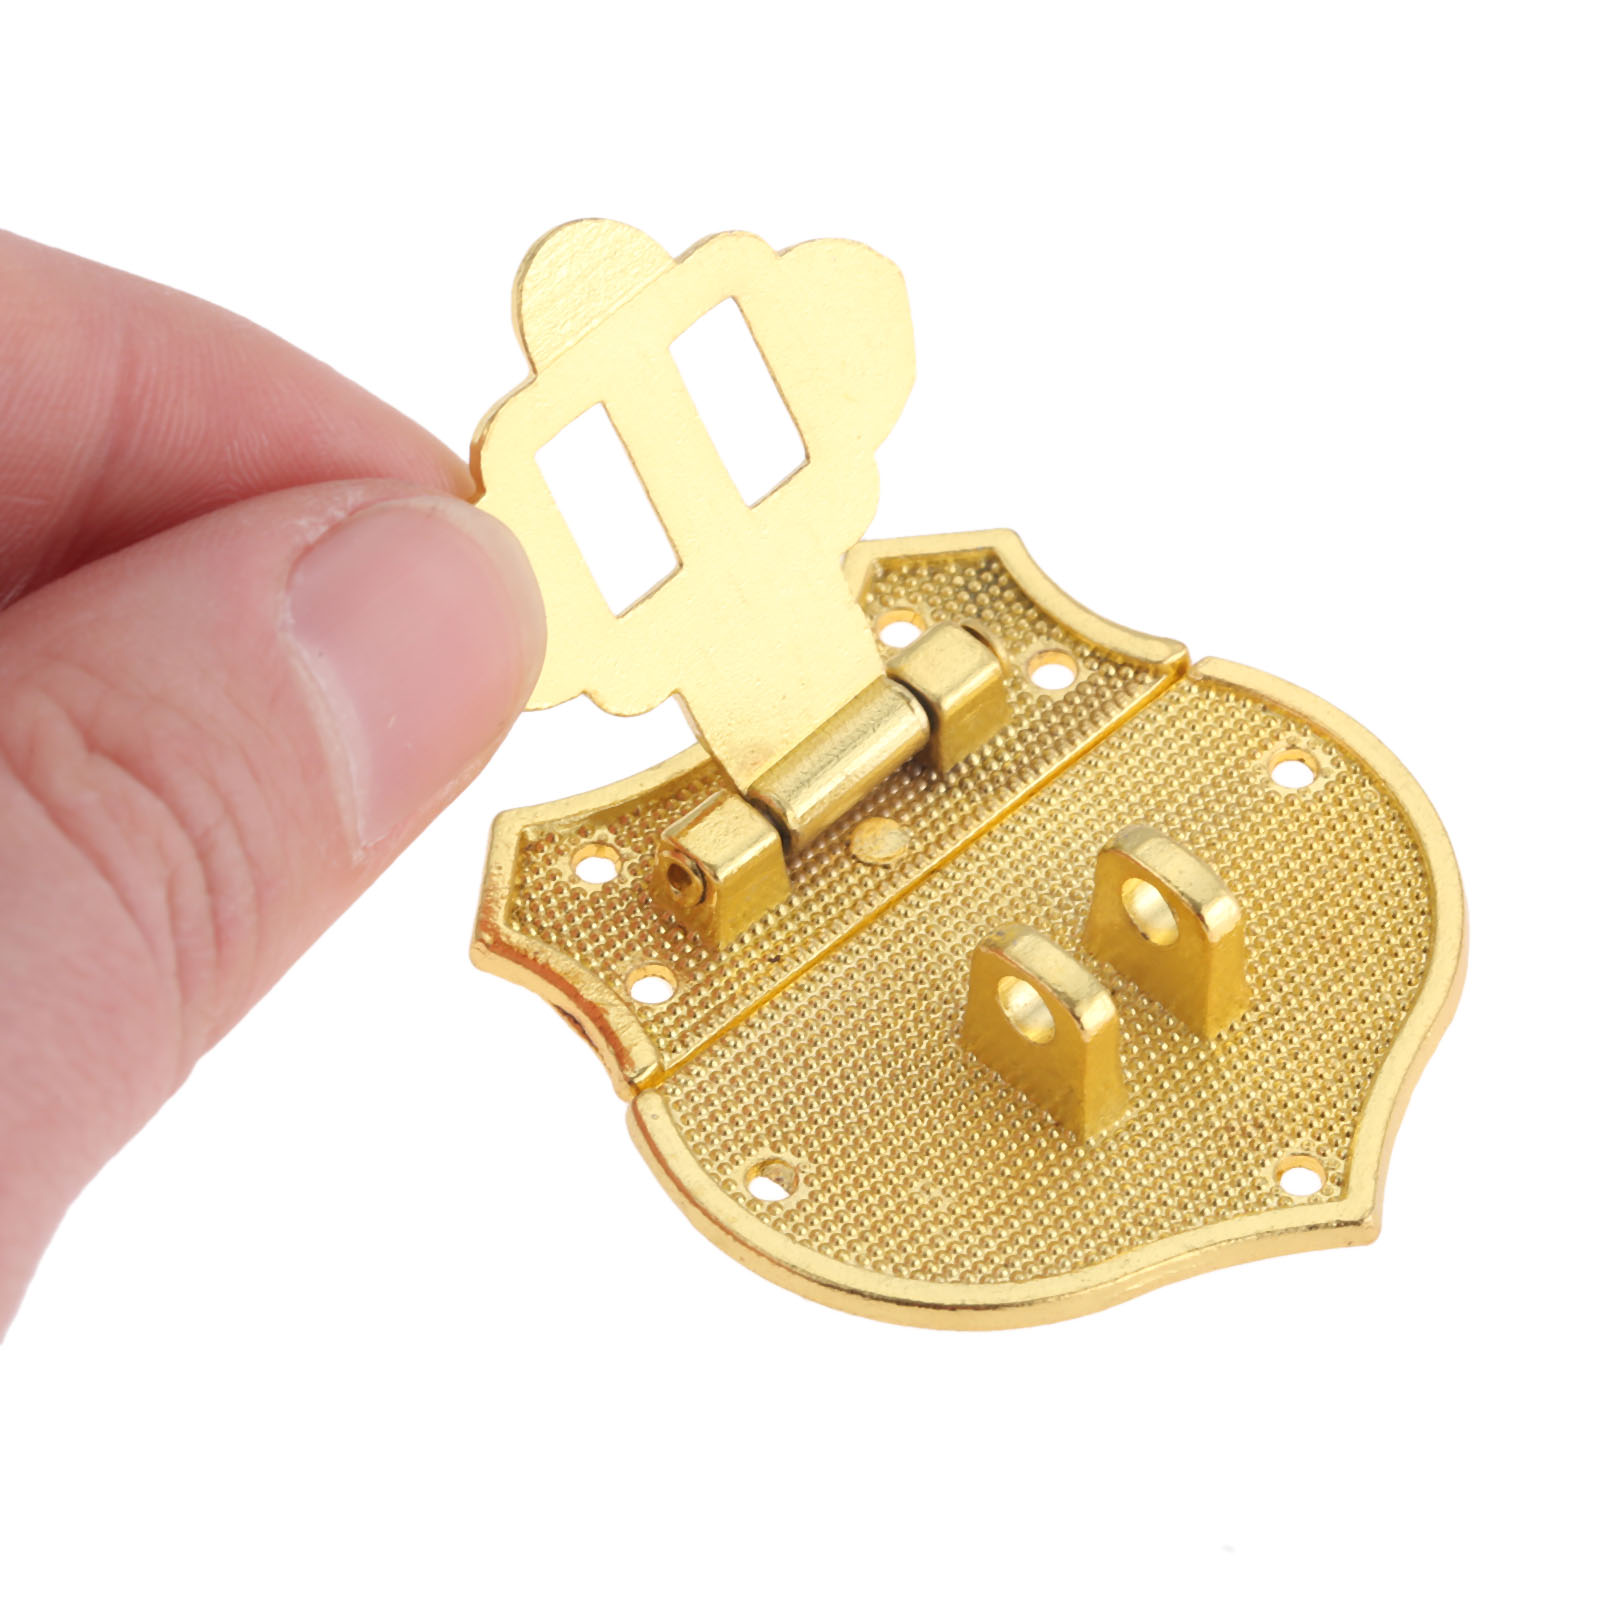 Dreld Bronze/Gold Box HASP LOCK CATCH CATCHES FÖR SMEYCH BOX FÖRSÄLJNING SPÄRKLASKLASKLASKA ANMÄRKNINGAR